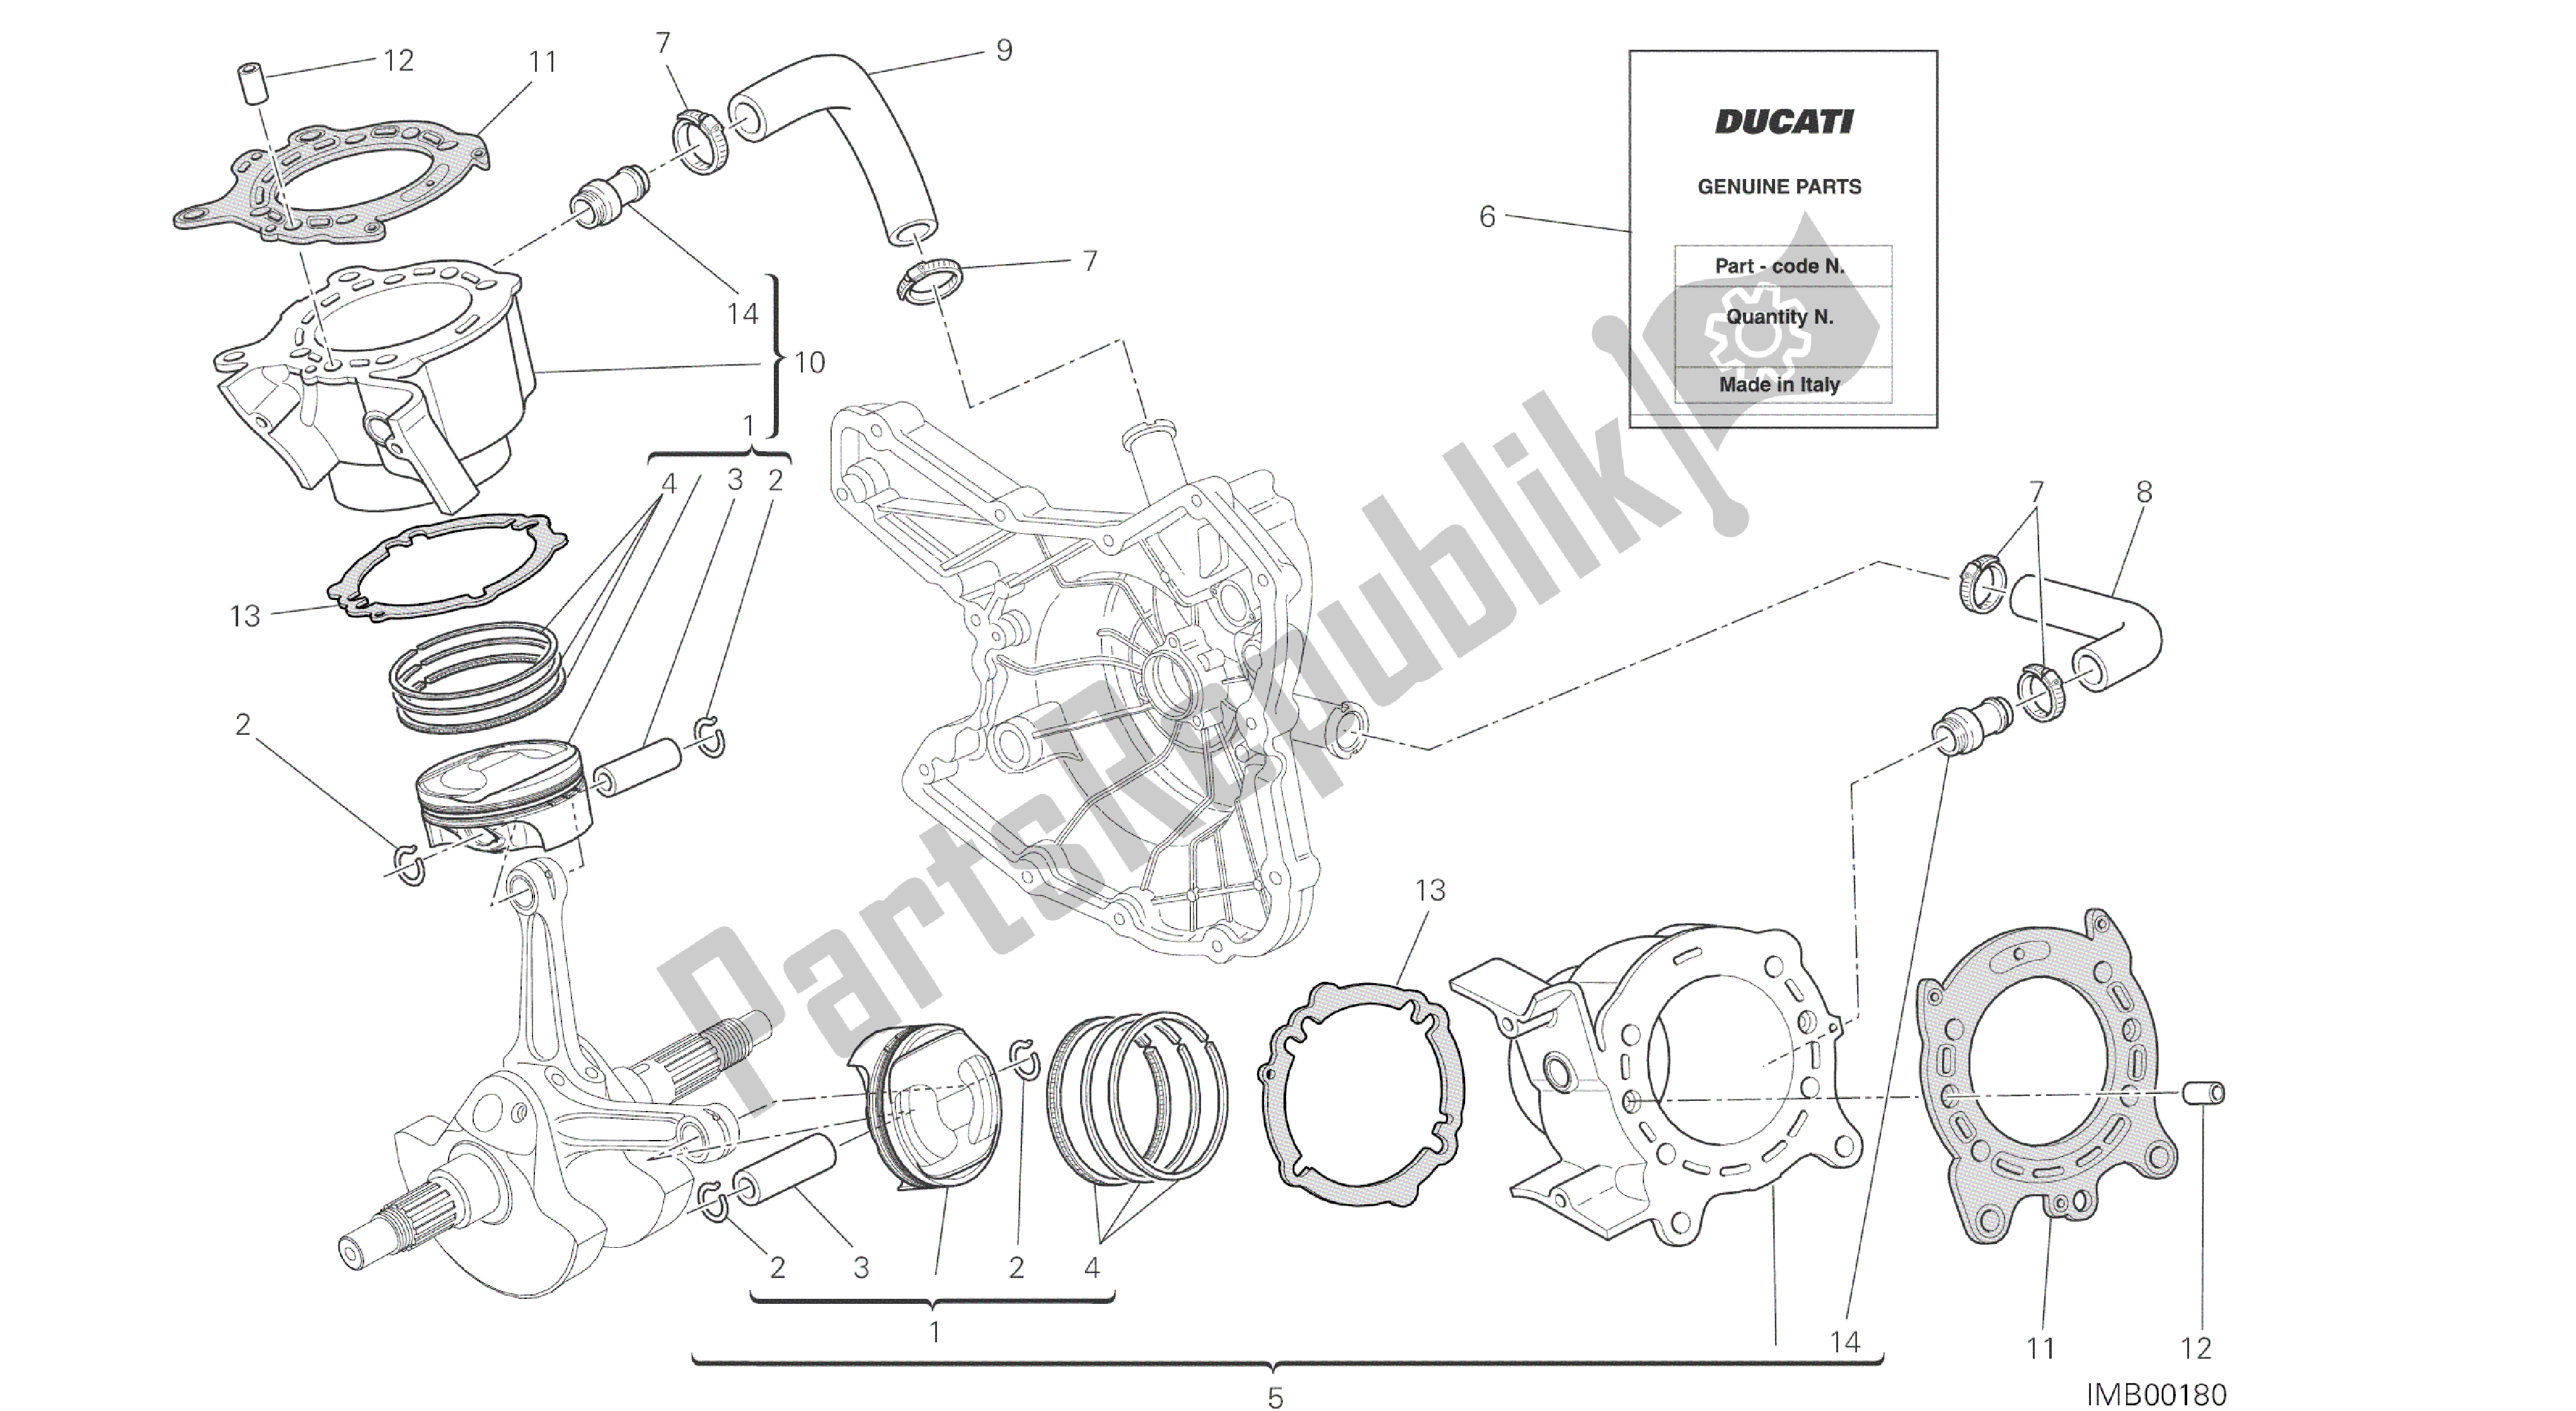 Tutte le parti per il Disegno 007 - Cilindro - Pistone [mod: Ms1200st; Xst: Aus, Chn, Eur, Fra, Jap, Tha] Gruppo Motore del Ducati Multistrada S Touring 1200 2014